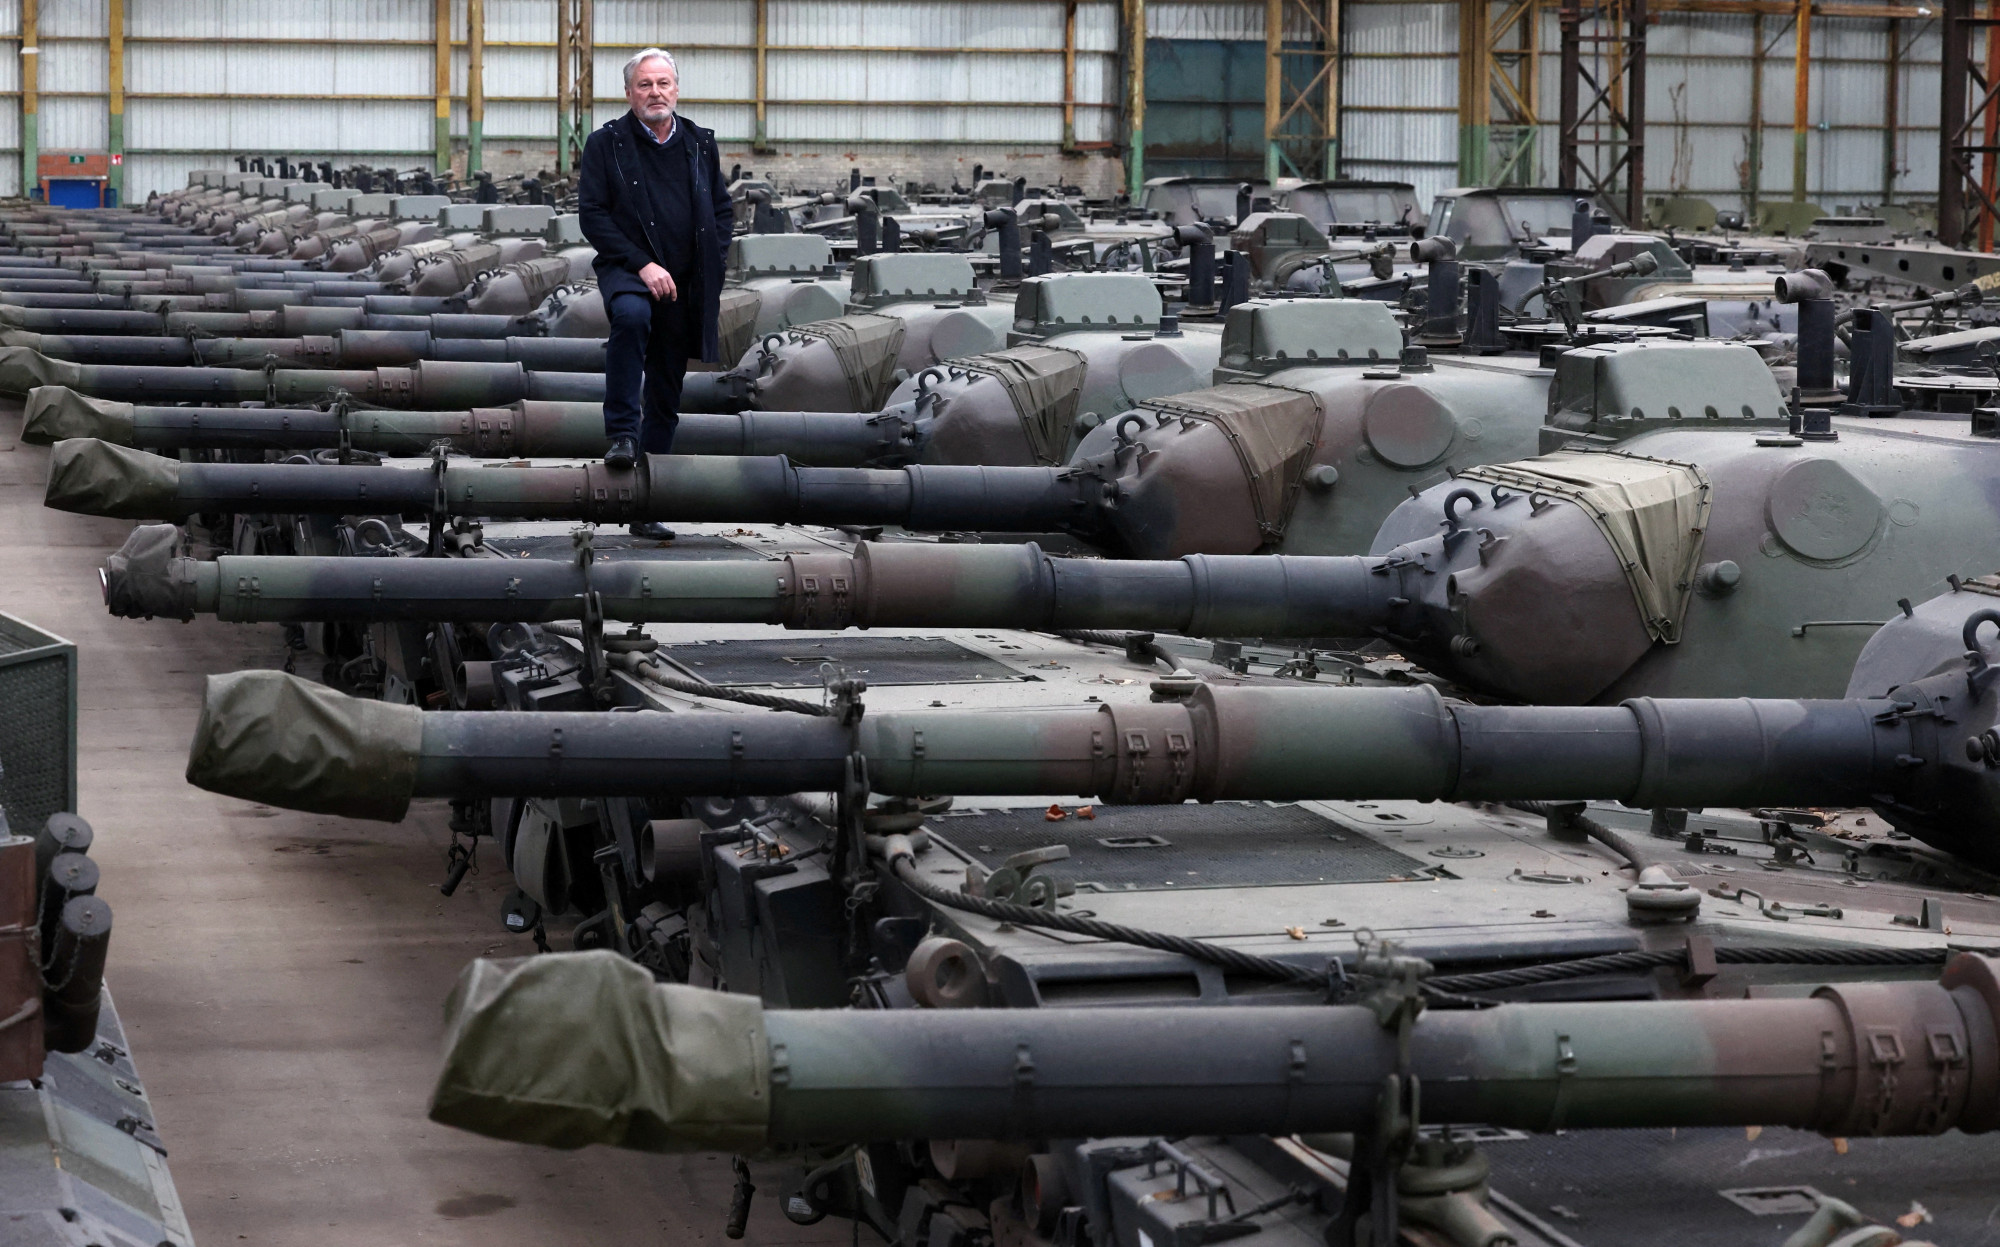 Sokkal több tankot küldenek Ukrajnának a németek, mint azt korábban gondolták